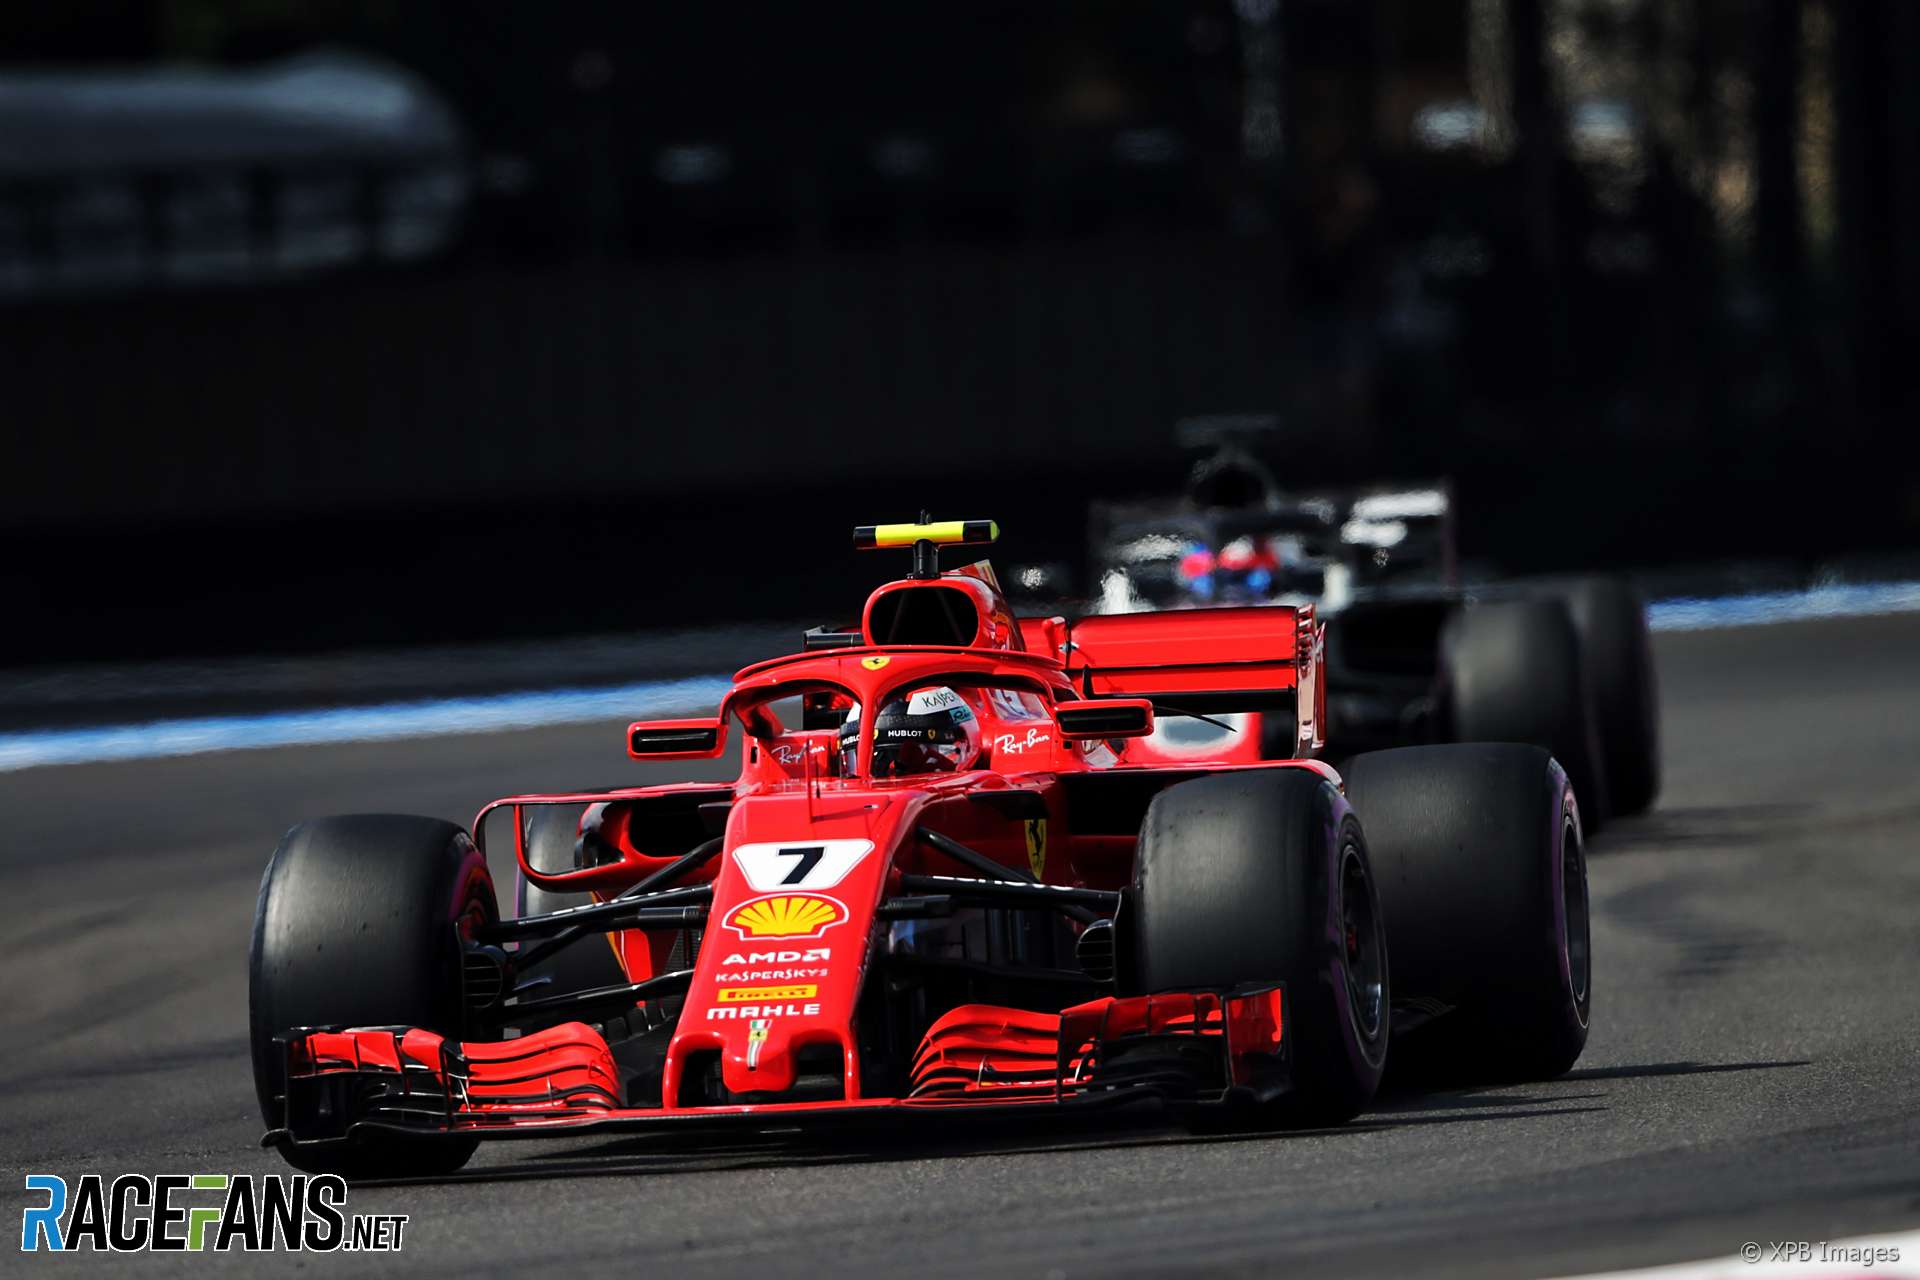 Kimi Raikkonen, Ferrari, Paul Ricard, 2018